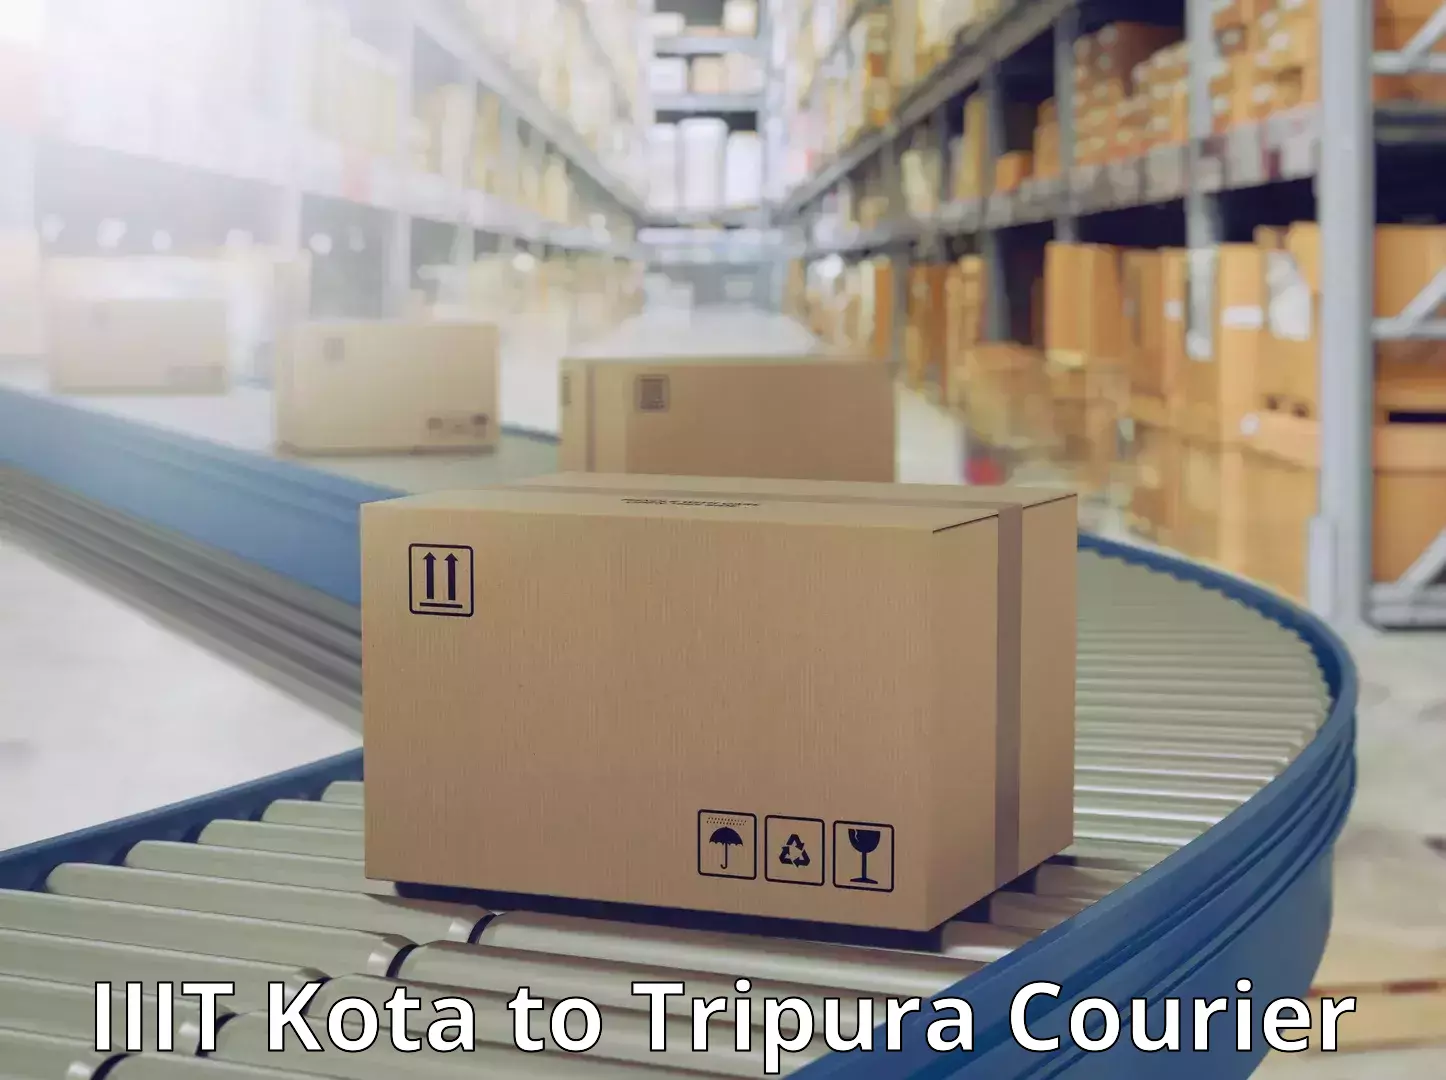 Customizable delivery plans IIIT Kota to Aambasa